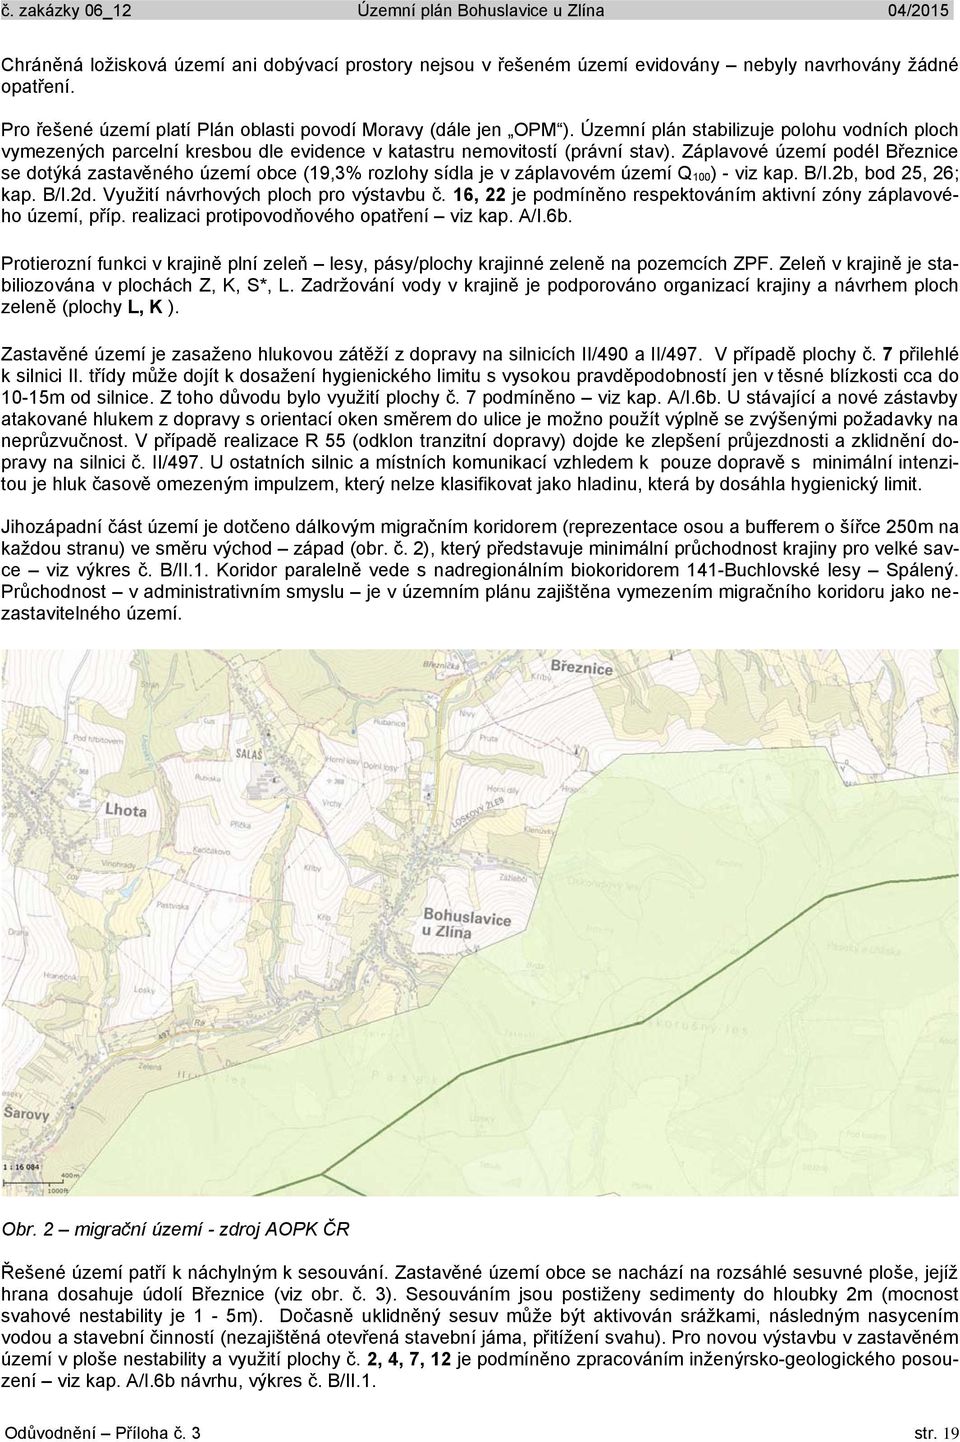 Záplavové území podél Březnice se dotýká zastavěného území obce (19,3% rozlohy sídla je v záplavovém území Q 100) - viz kap. B/I.2b, bod 25, 26; kap. B/I.2d. Využití návrhových ploch pro výstavbu č.